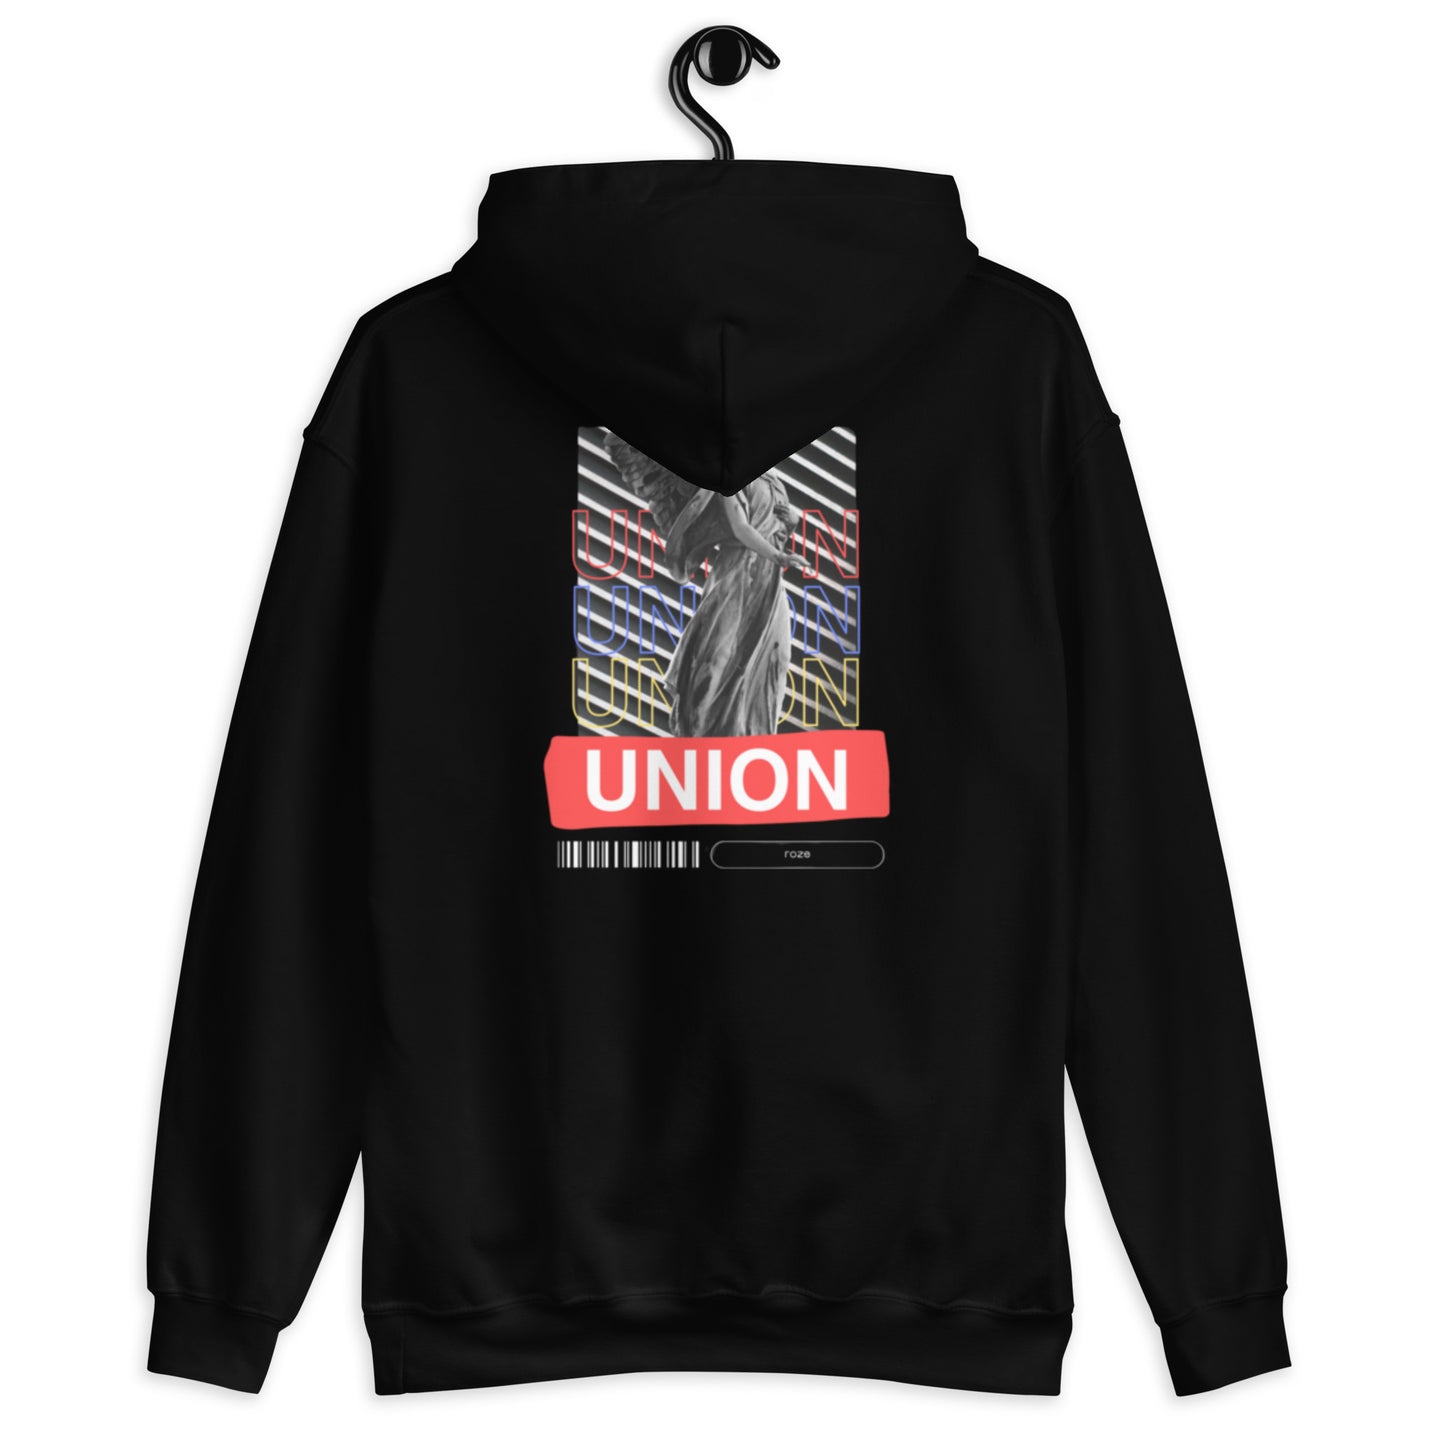 "UNION" heavy hoodie